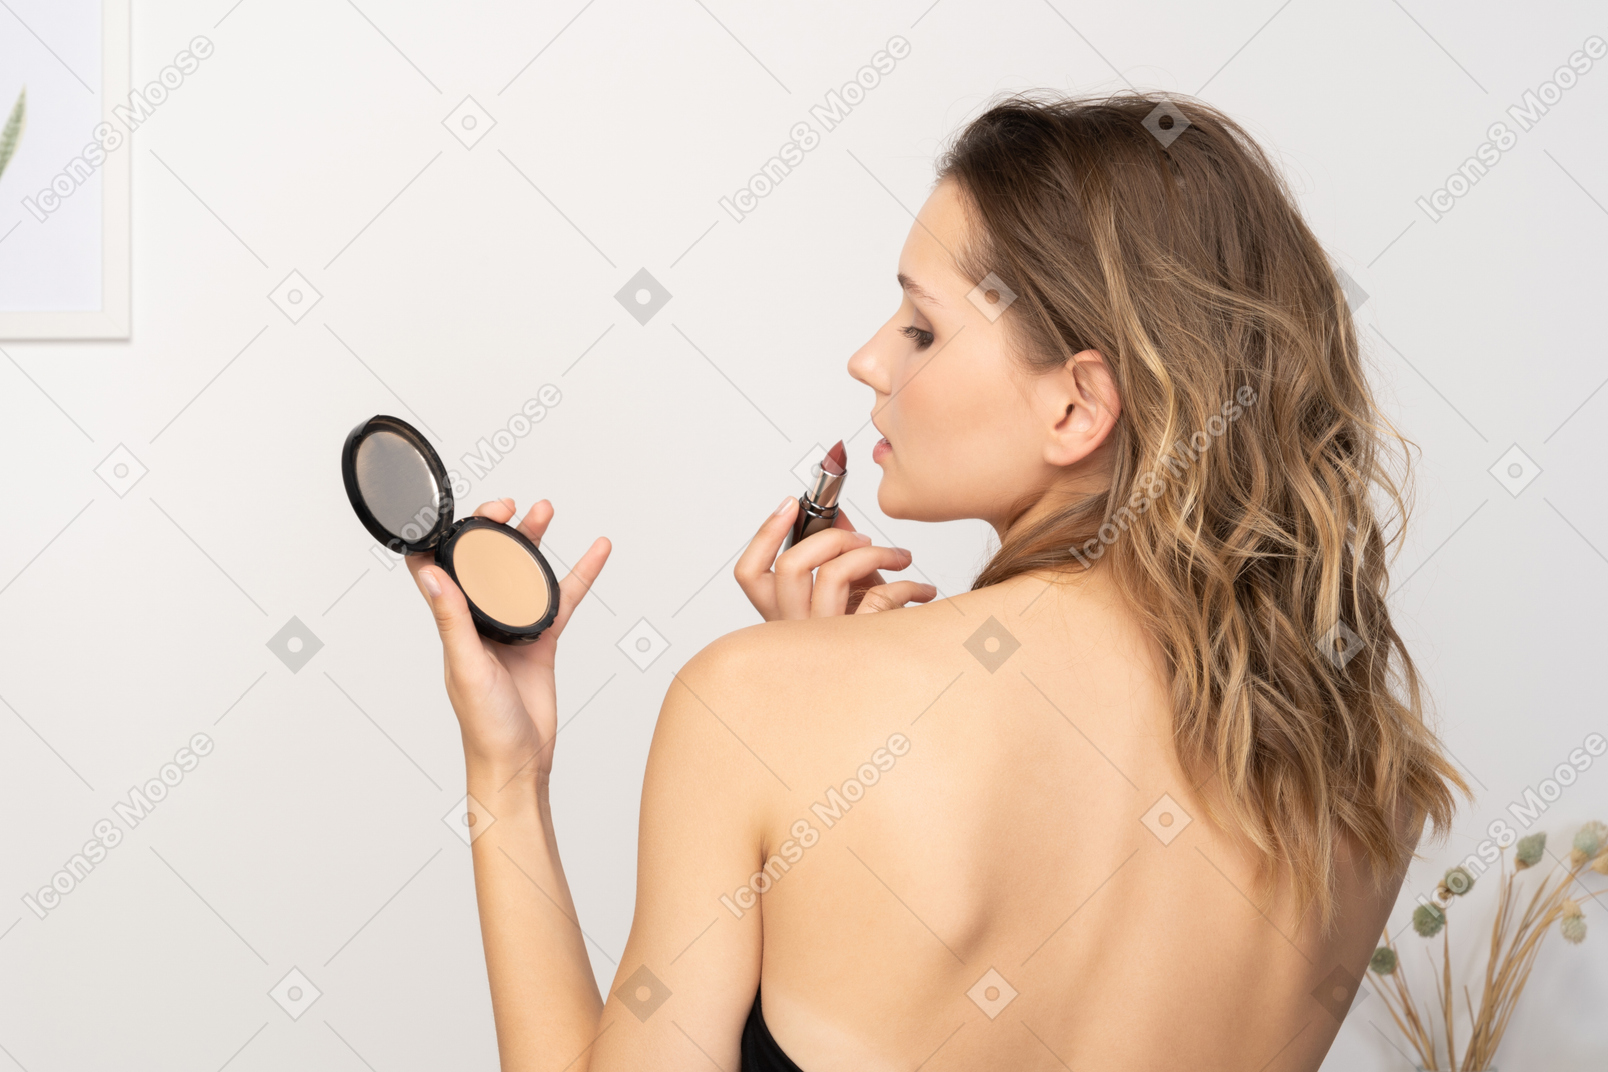 Dreiviertel-rückansicht einer sinnlichen jungen frau, die lippenstift aufträgt, während sie einen spiegel hält